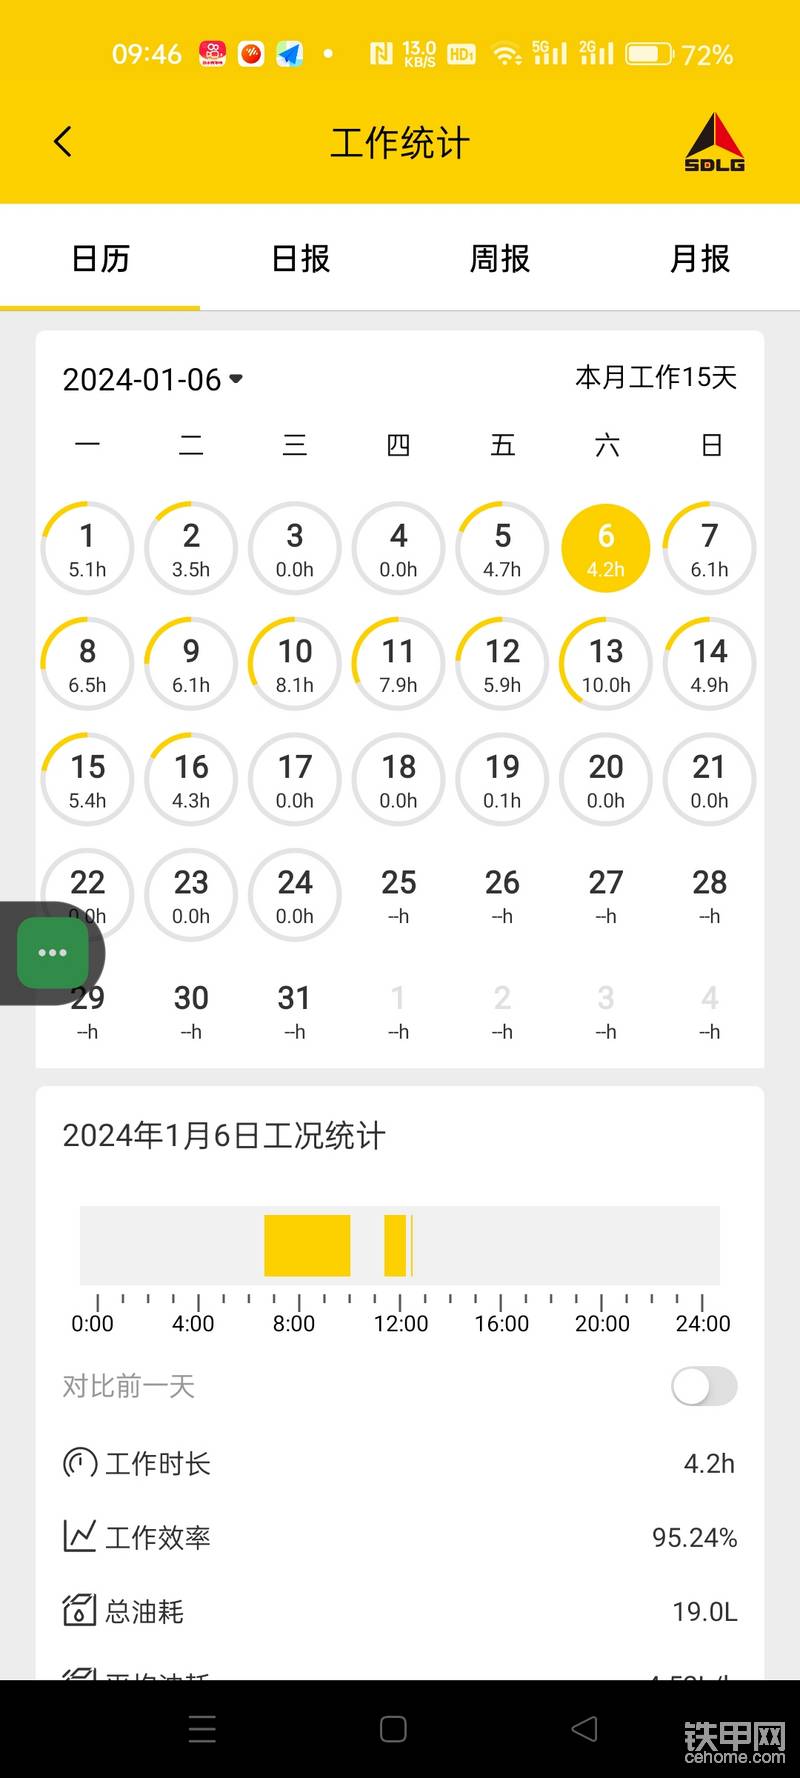 2022年12月临工75手机App时间更新问题-帖子图片